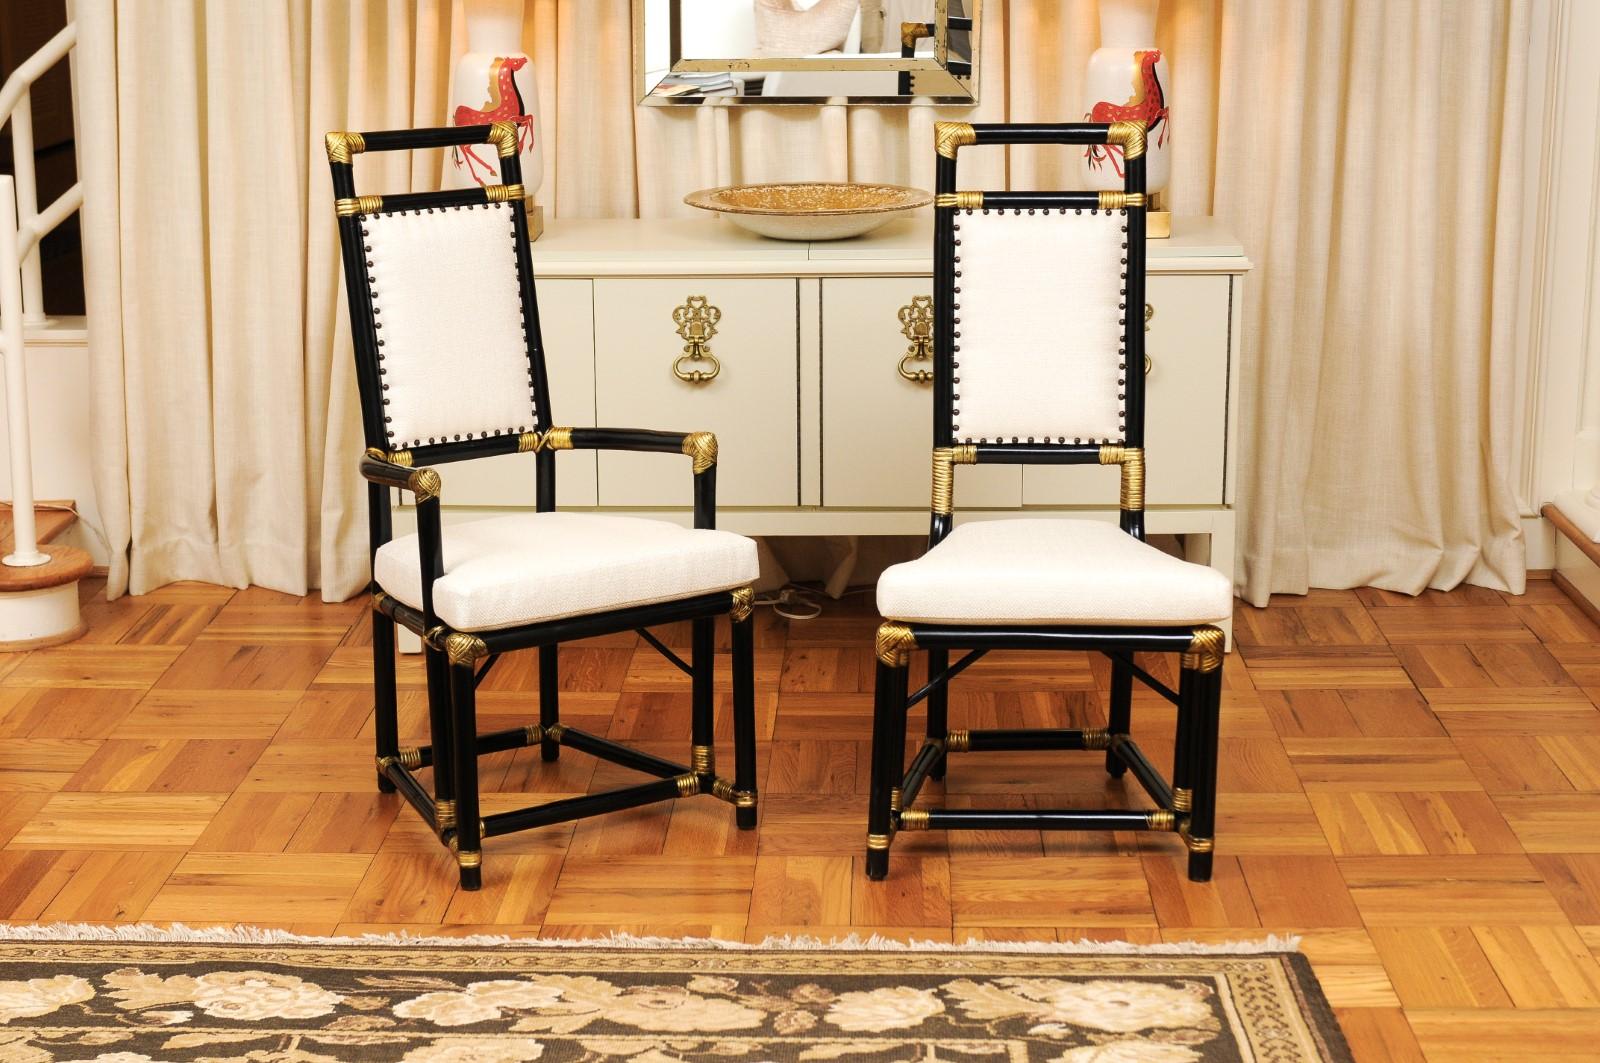 Un ensemble exceptionnellement rare de huit (8) chaises de salle à manger en rotin et canne par le grand Henry Olko pour son Willow & Reed, vers 1955. M. Olko a confirmé que cette chaise particulière était l'un de ses premiers modèles produits